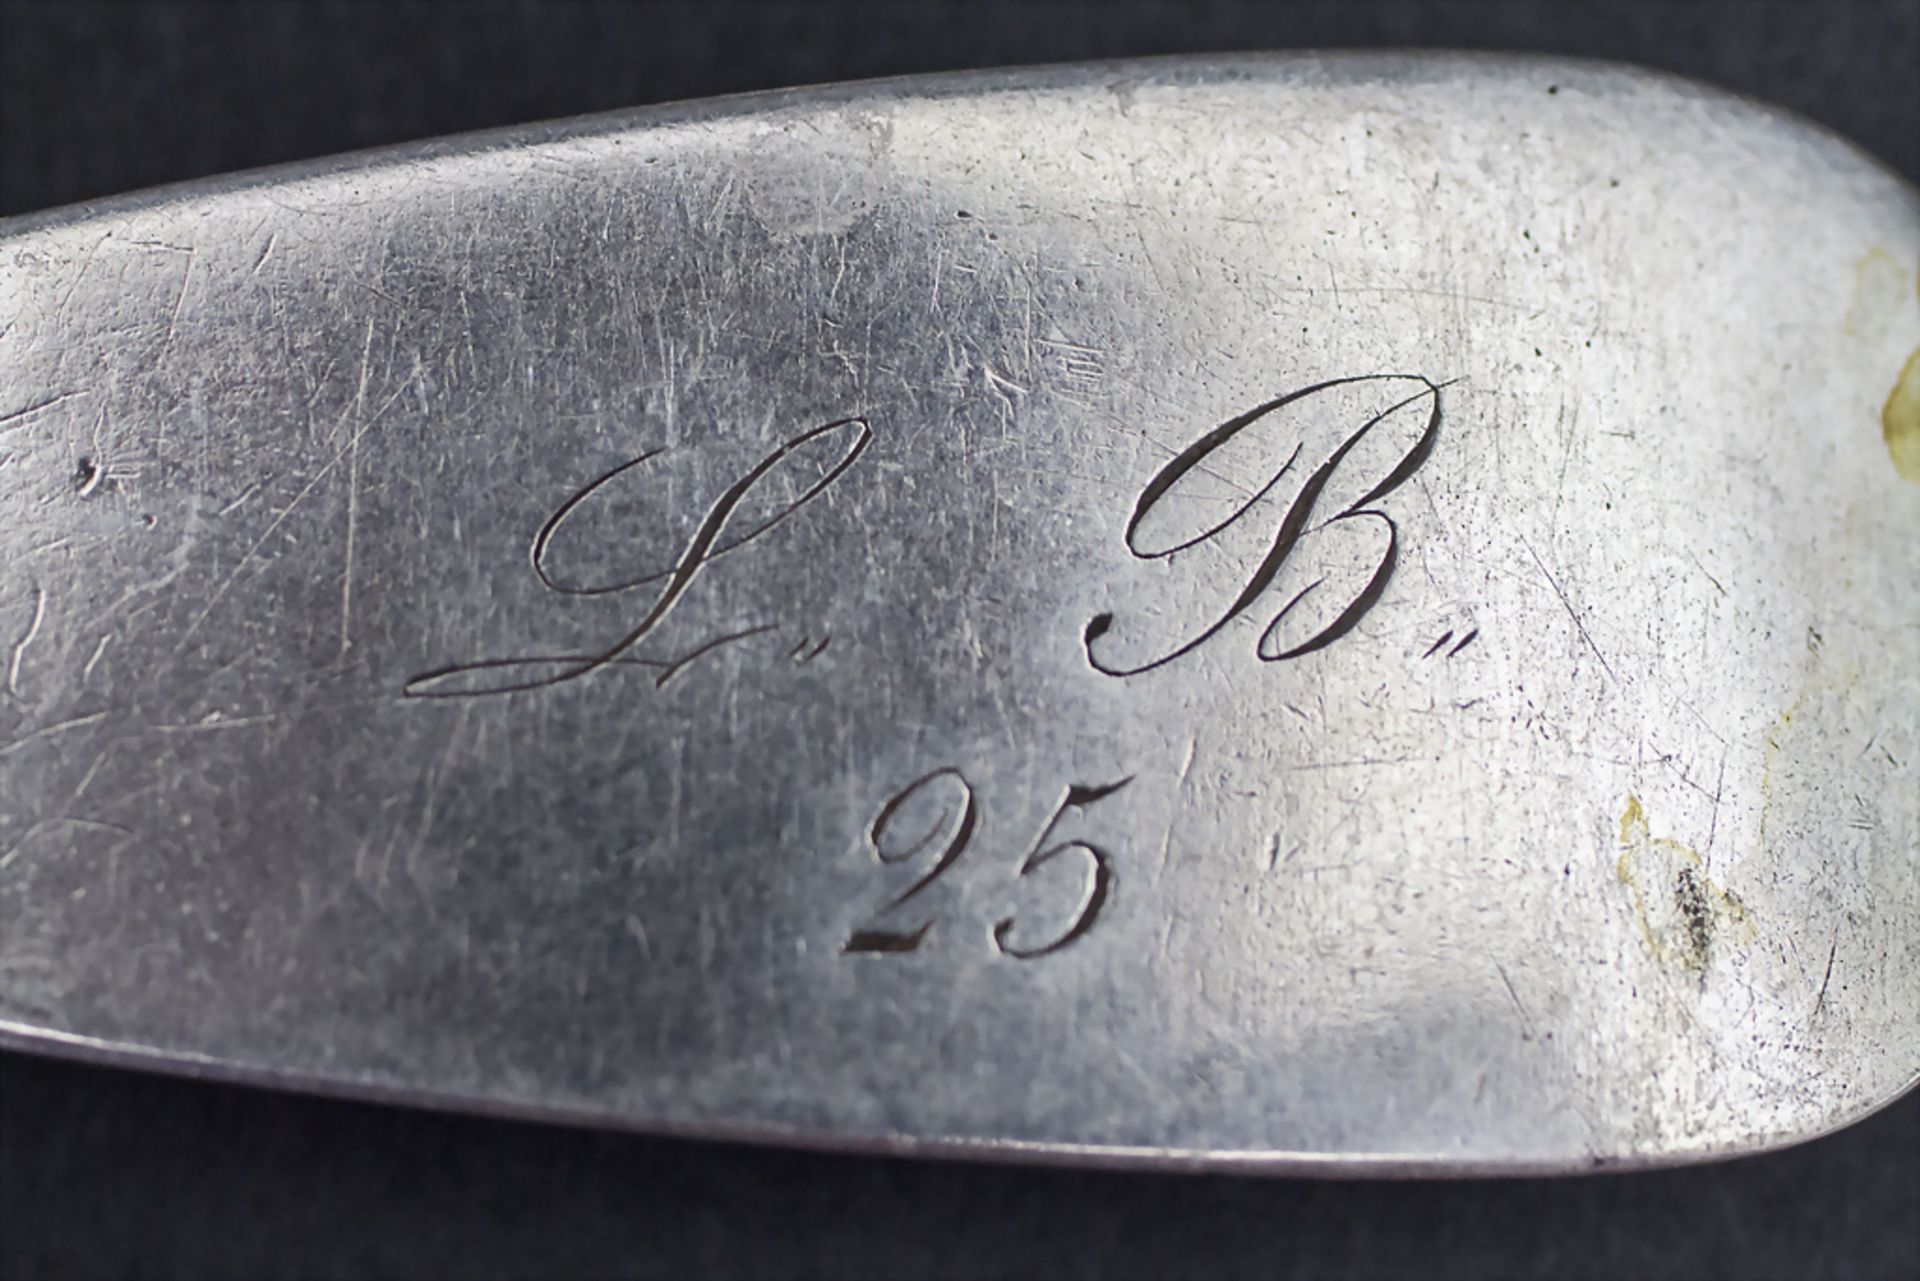 12-tlg. Silberbesteck / A 12-piece set of silver cutlery, Paris, nach 1839 - Bild 6 aus 7